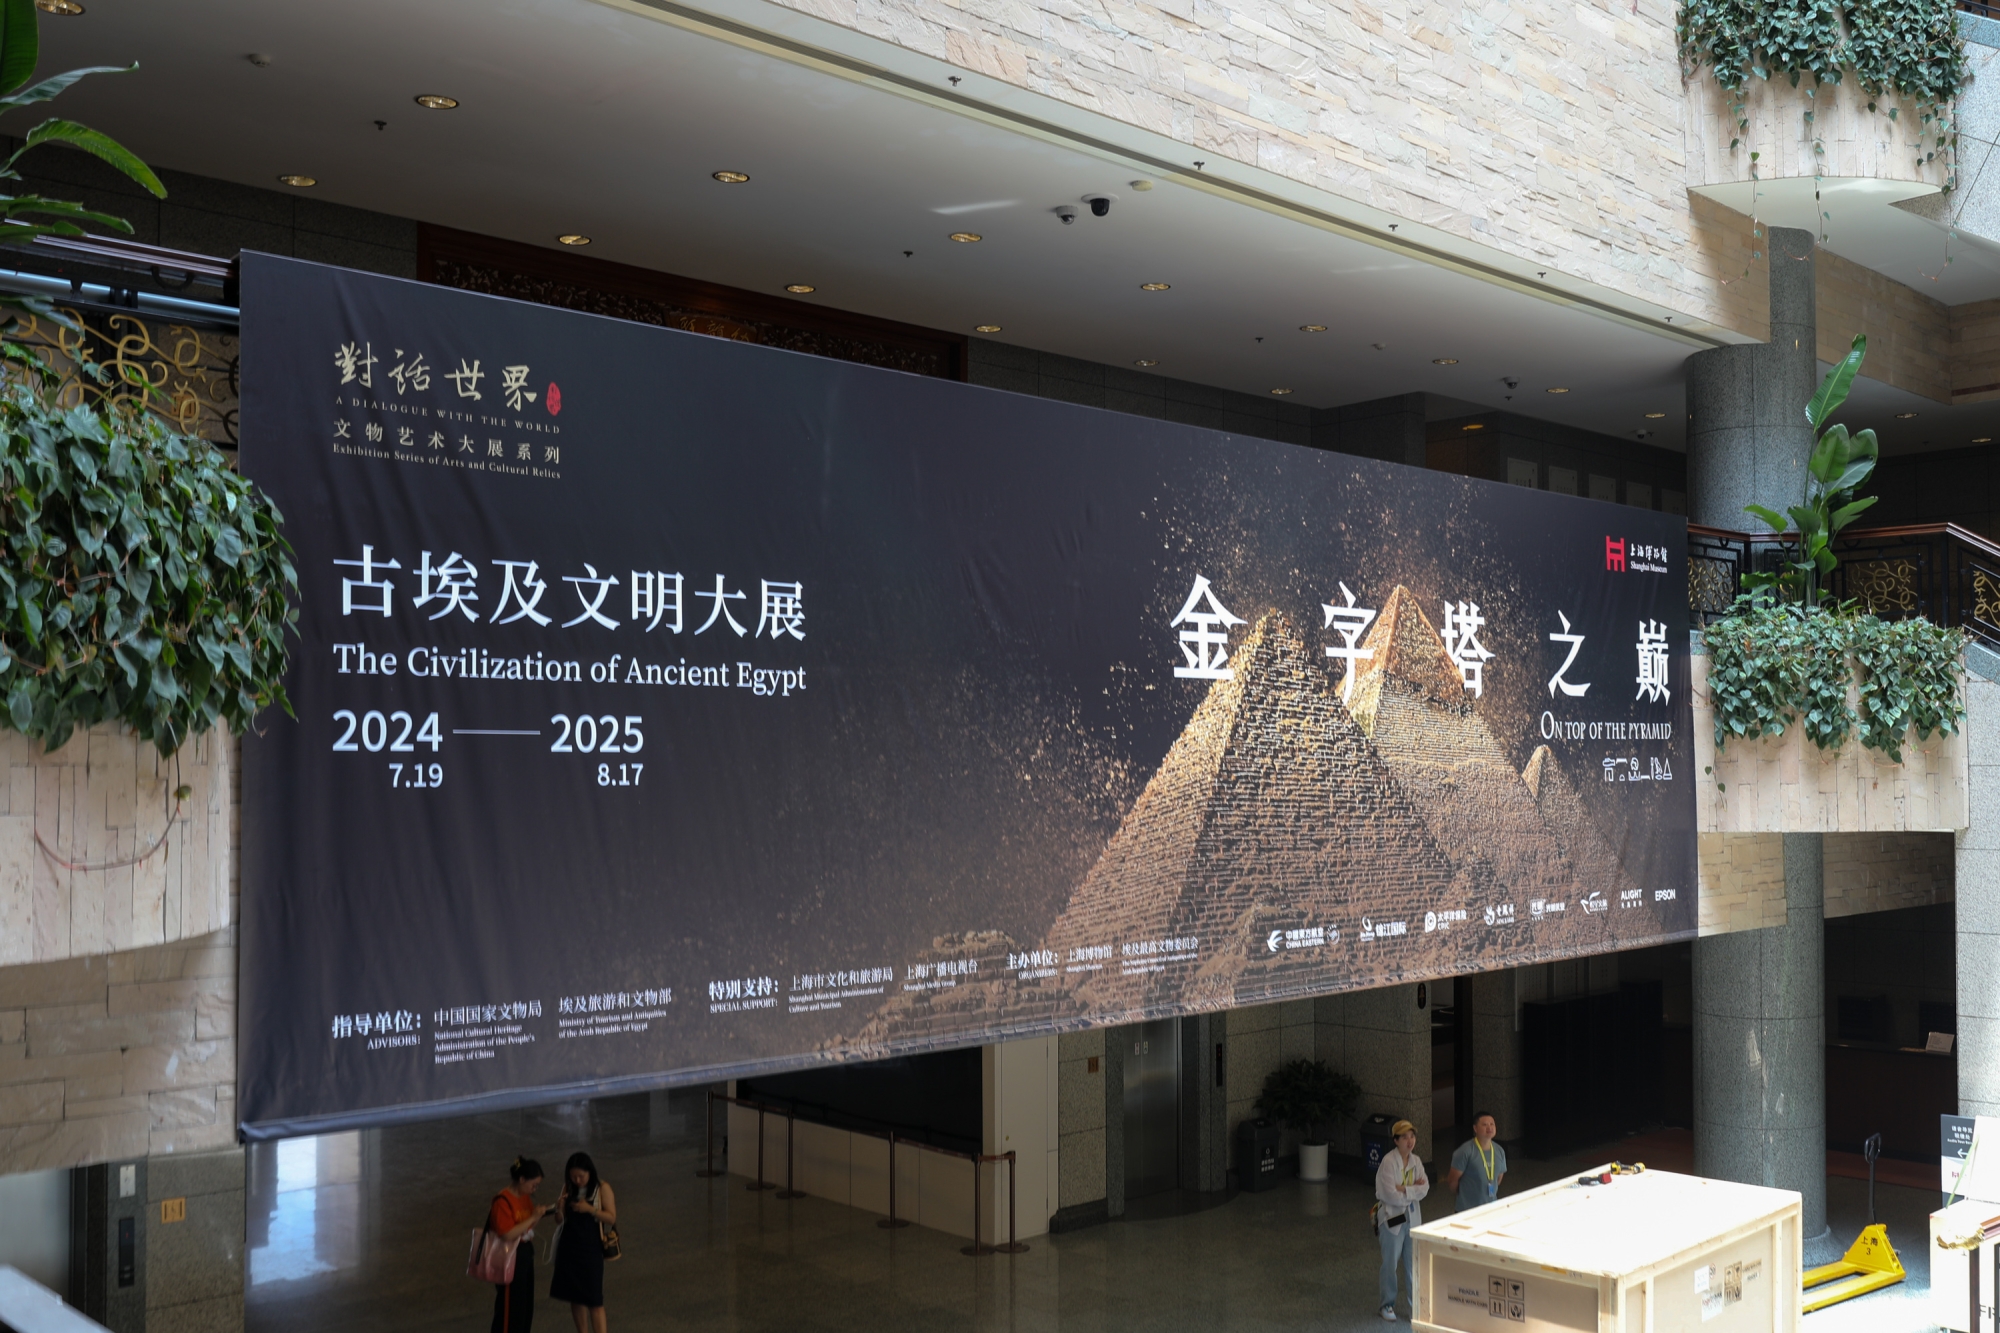 在二楼原中国古代陶瓷馆及原暂得楼展厅,上海博物馆还将携手国内知名